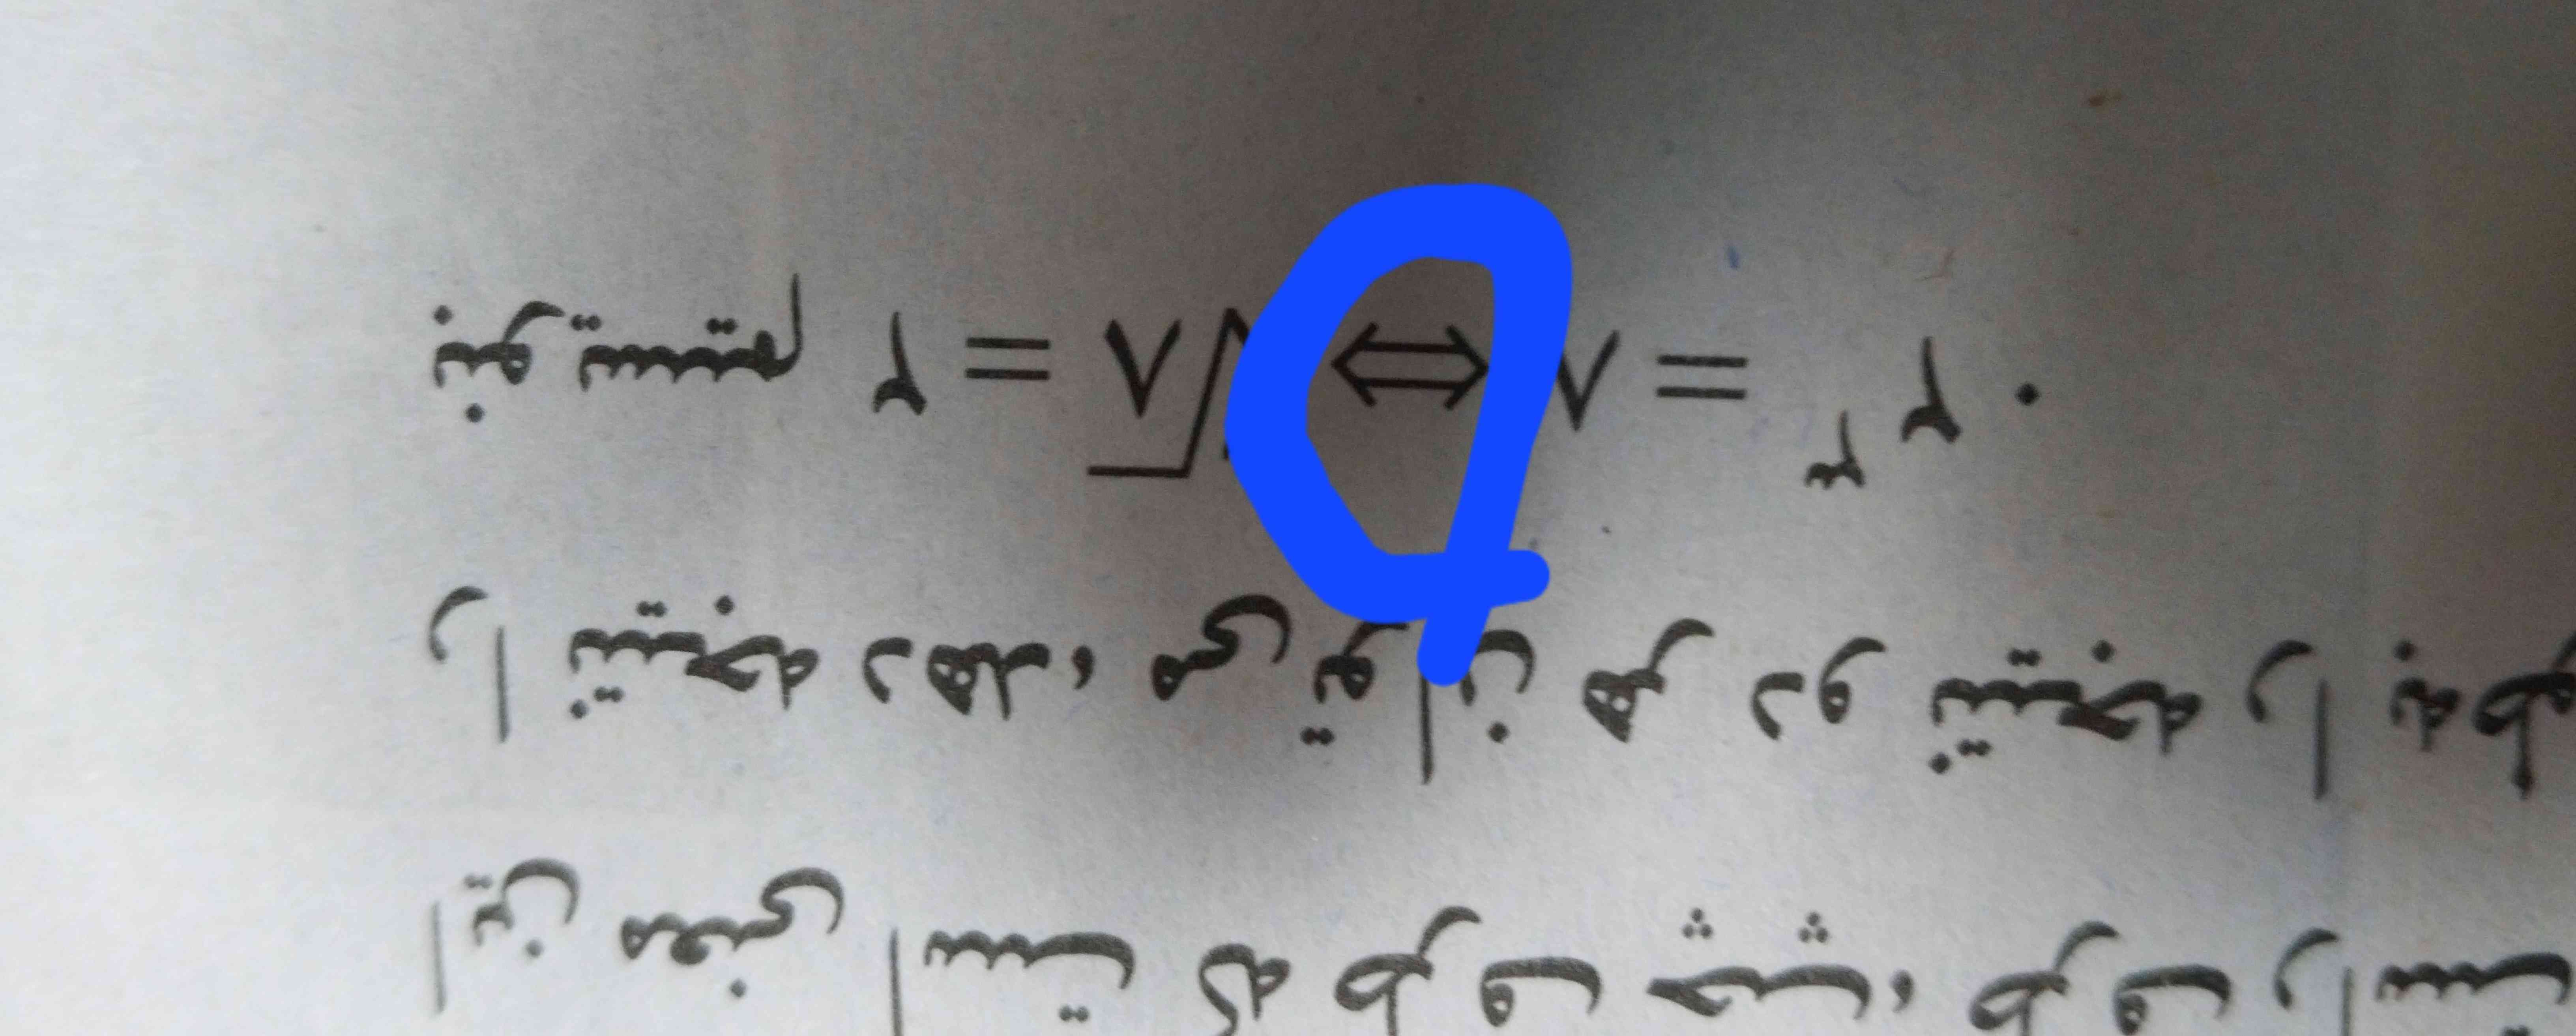 اسم این علامت چیه؟ 